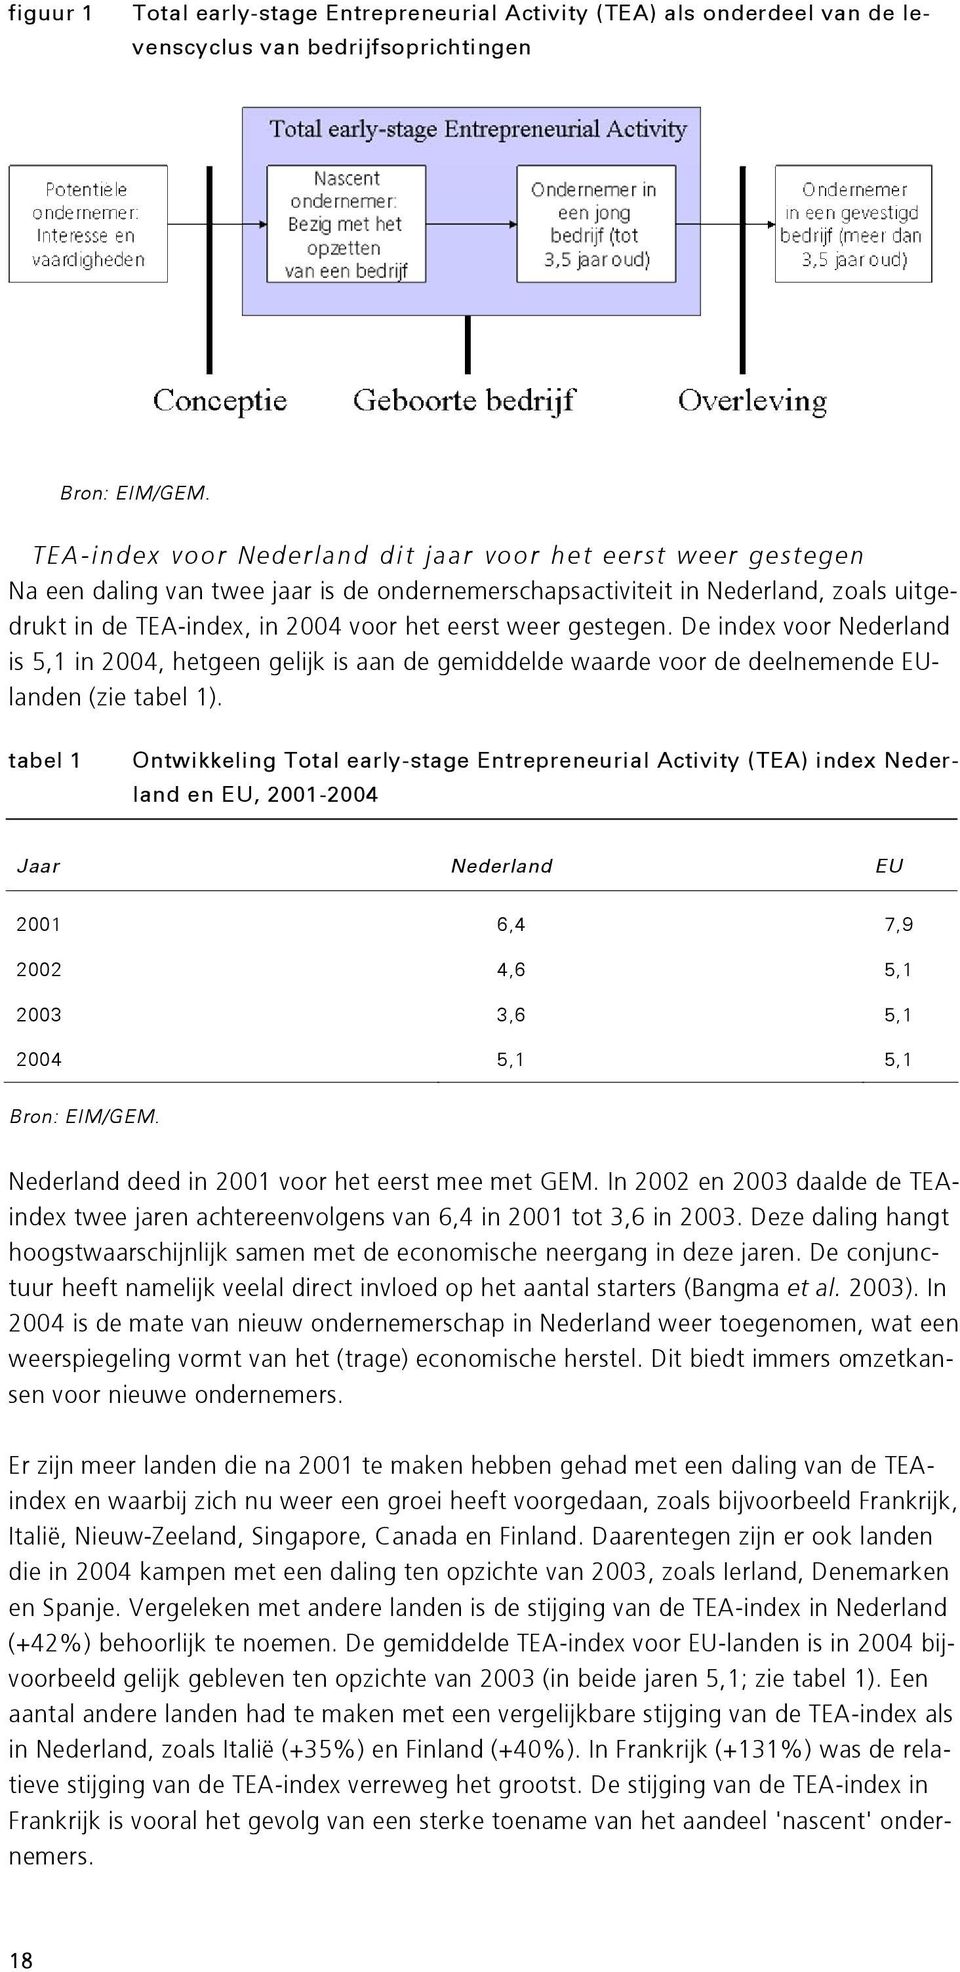 gestegen. De index voor Nederland is 5,1 in 2004, hetgeen gelijk is aan de gemiddelde waarde voor de deelnemende EUlanden (zie tabel 1).